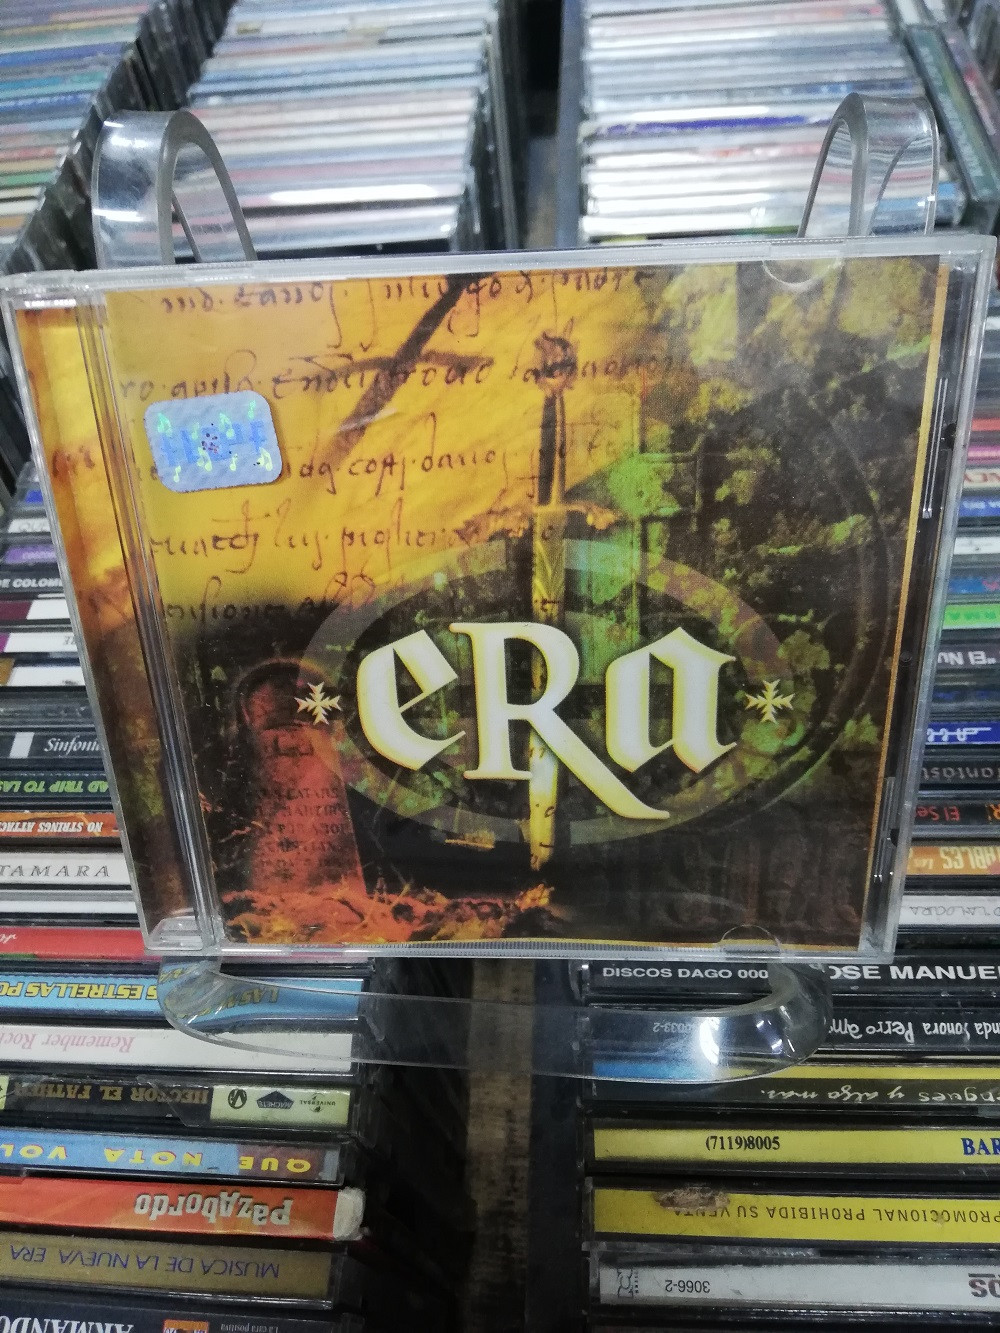 Imagen CD ERA - ERA